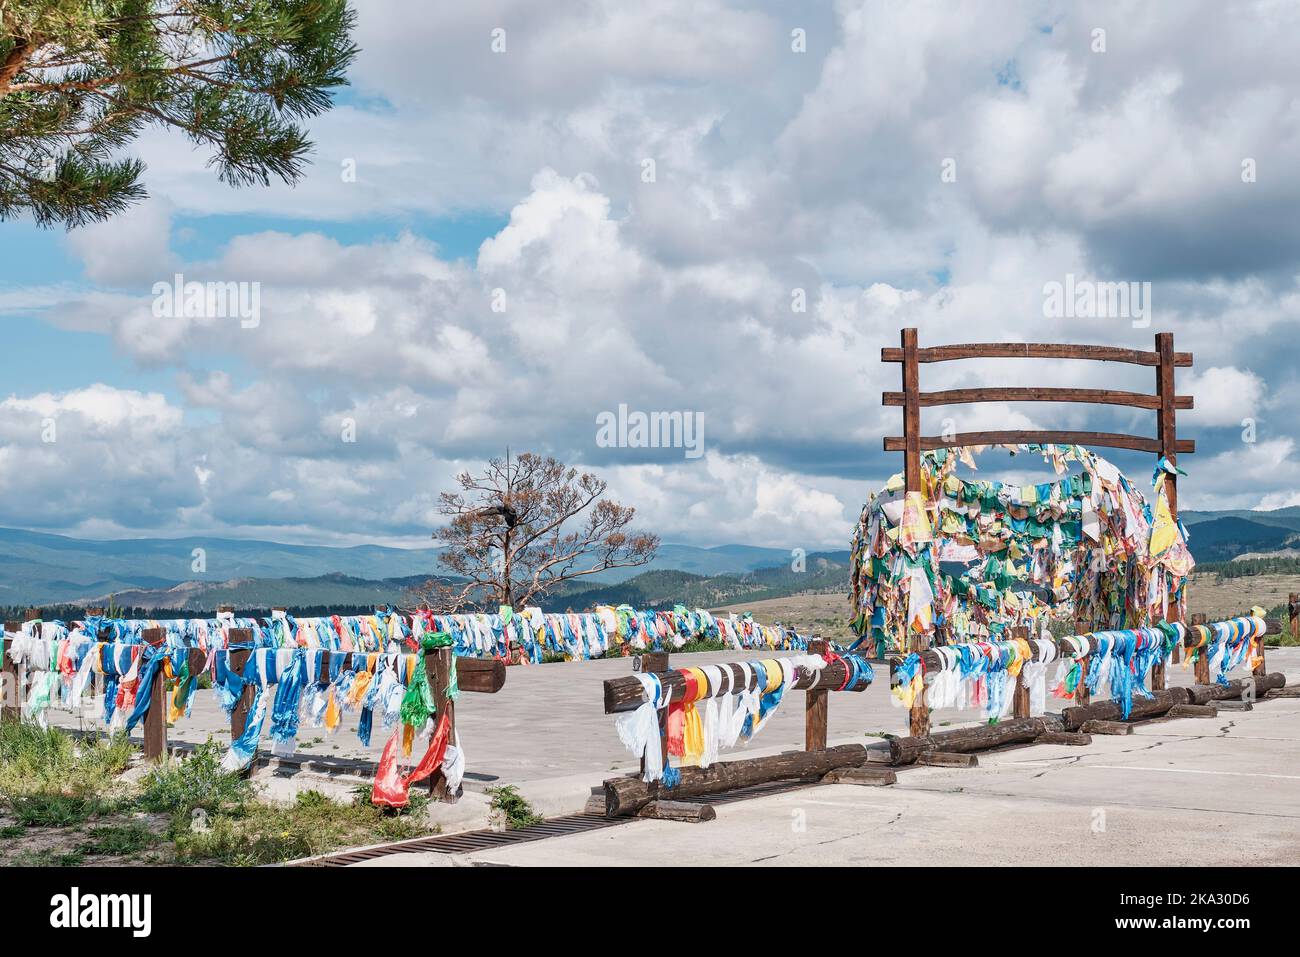 Place pour suspendre des drapeaux de chance colorés. Bouddhiste datsan Rinpoché Bagsha, Ulan-Ude, Buryatia, Russie Banque D'Images